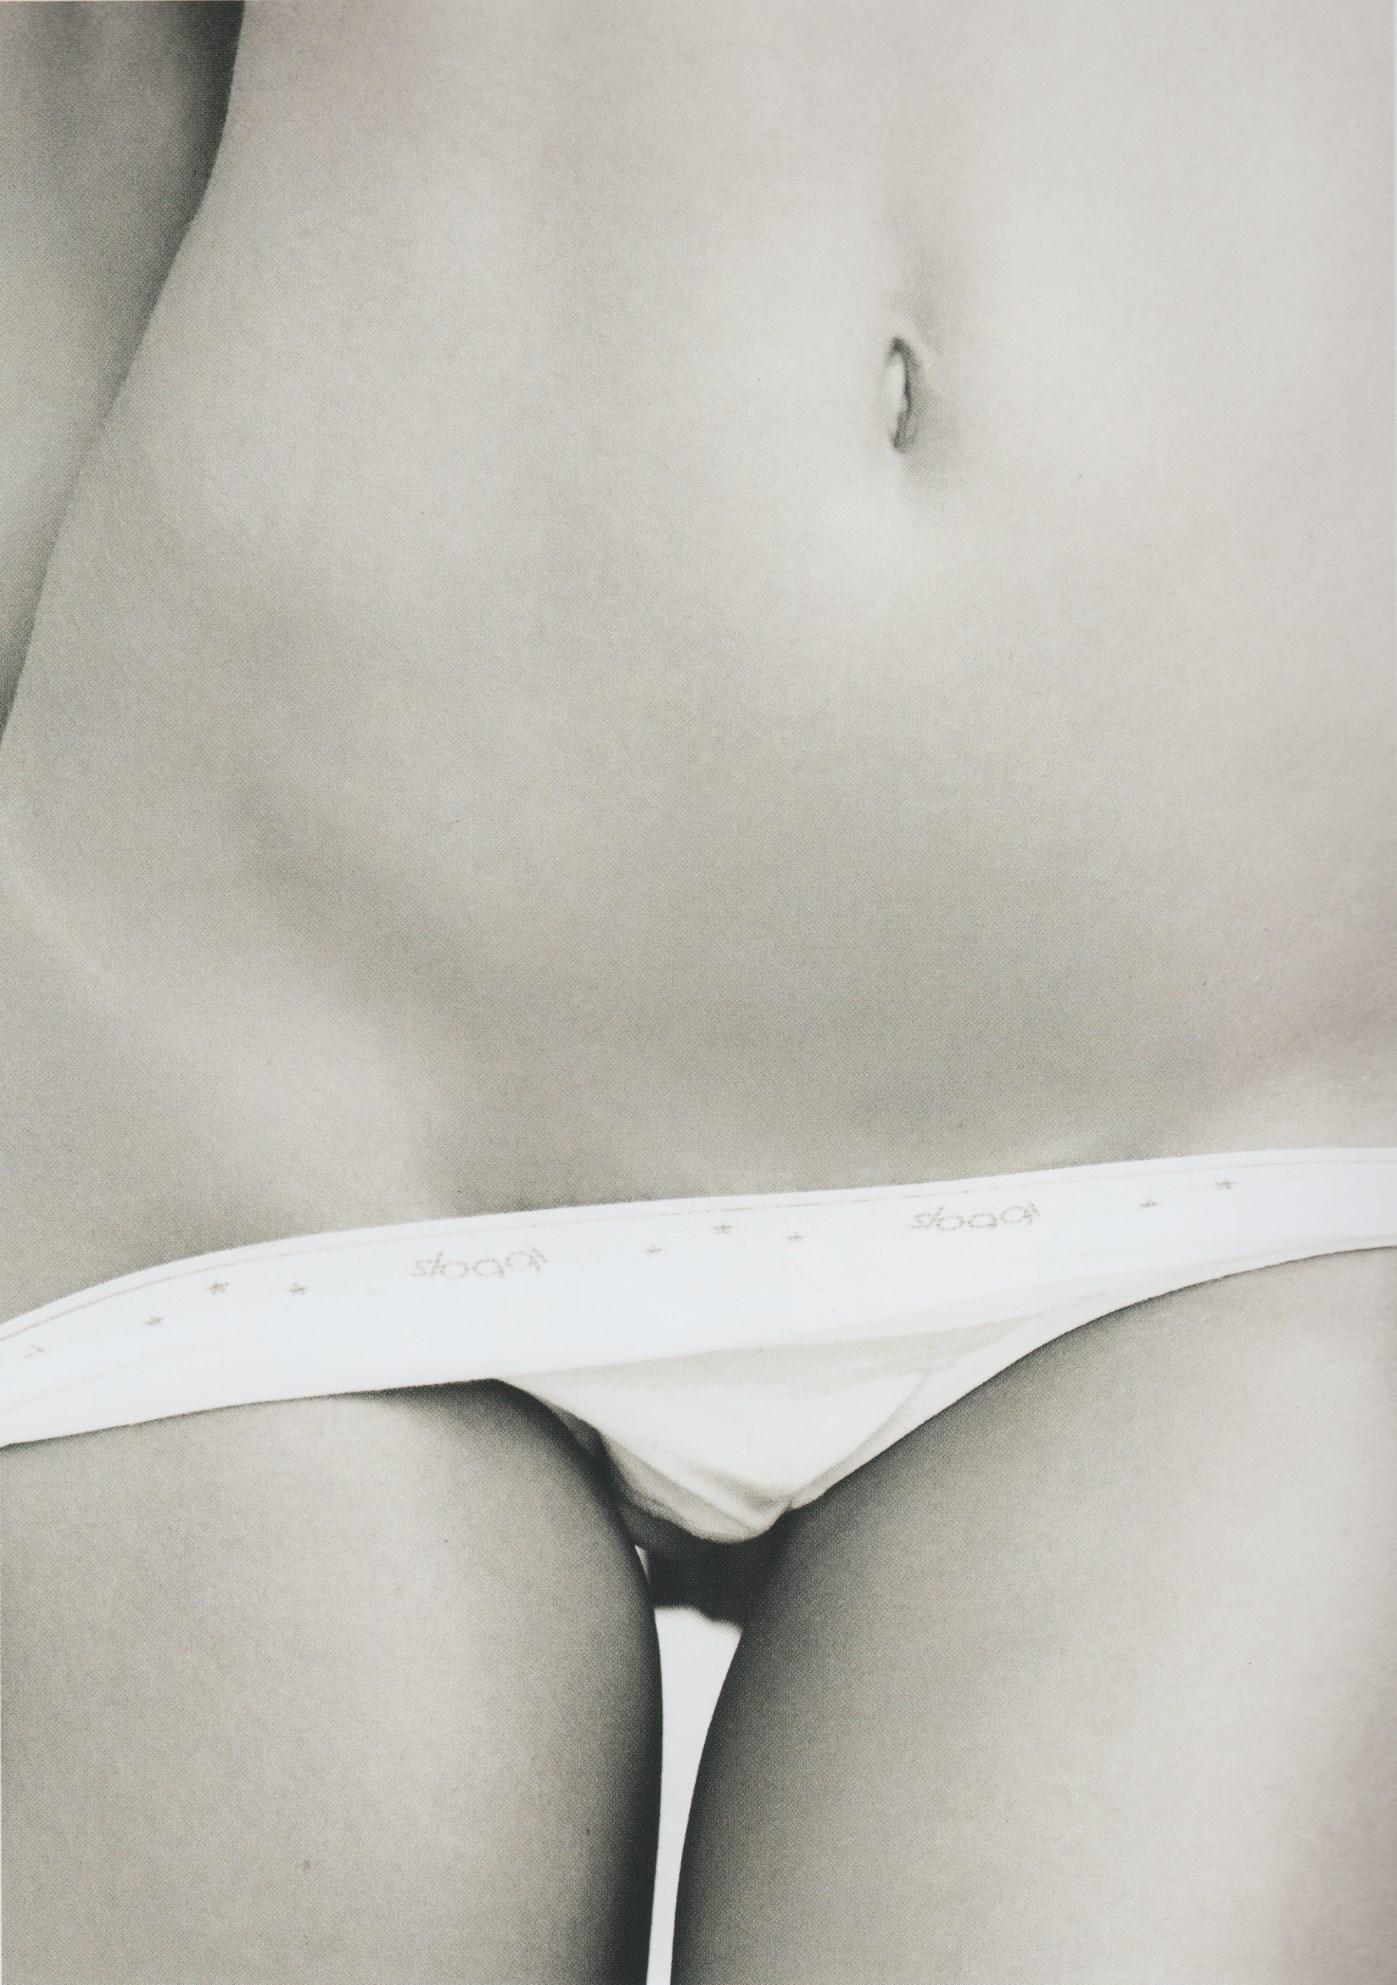 Mathilde goehler topless